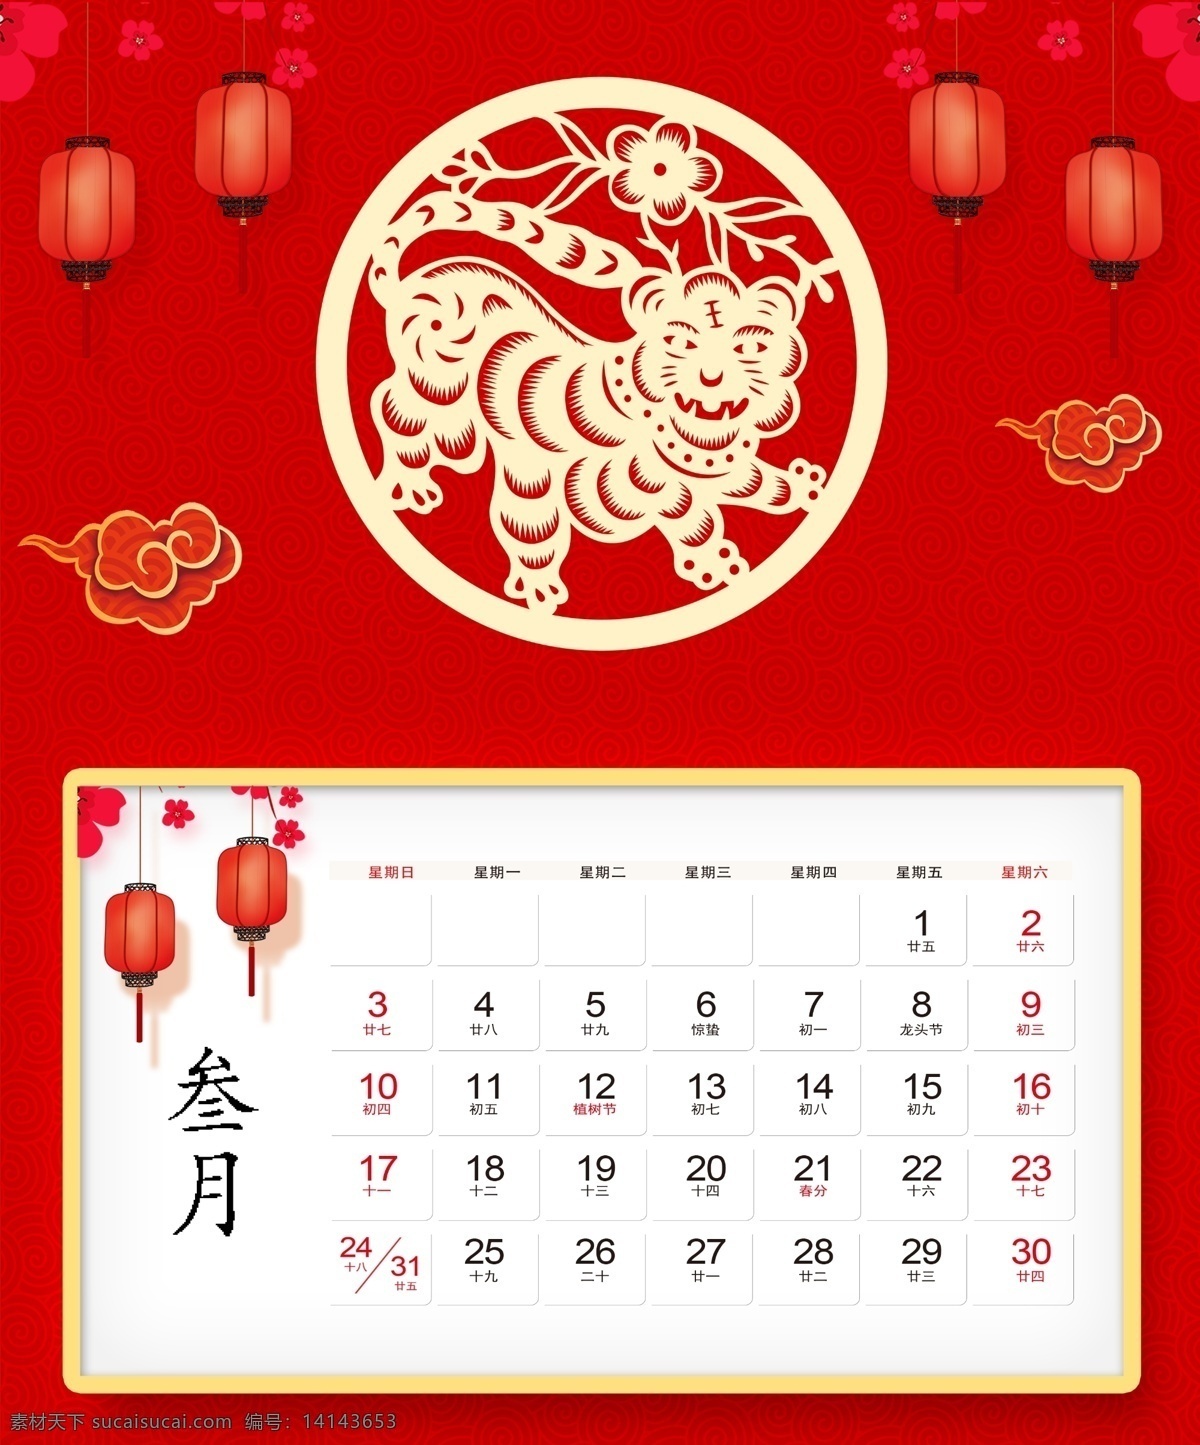 2019 十二生肖 台历 猪年 中国风 红色喜庆 台历模板 剪纸台历 十二生肖台历